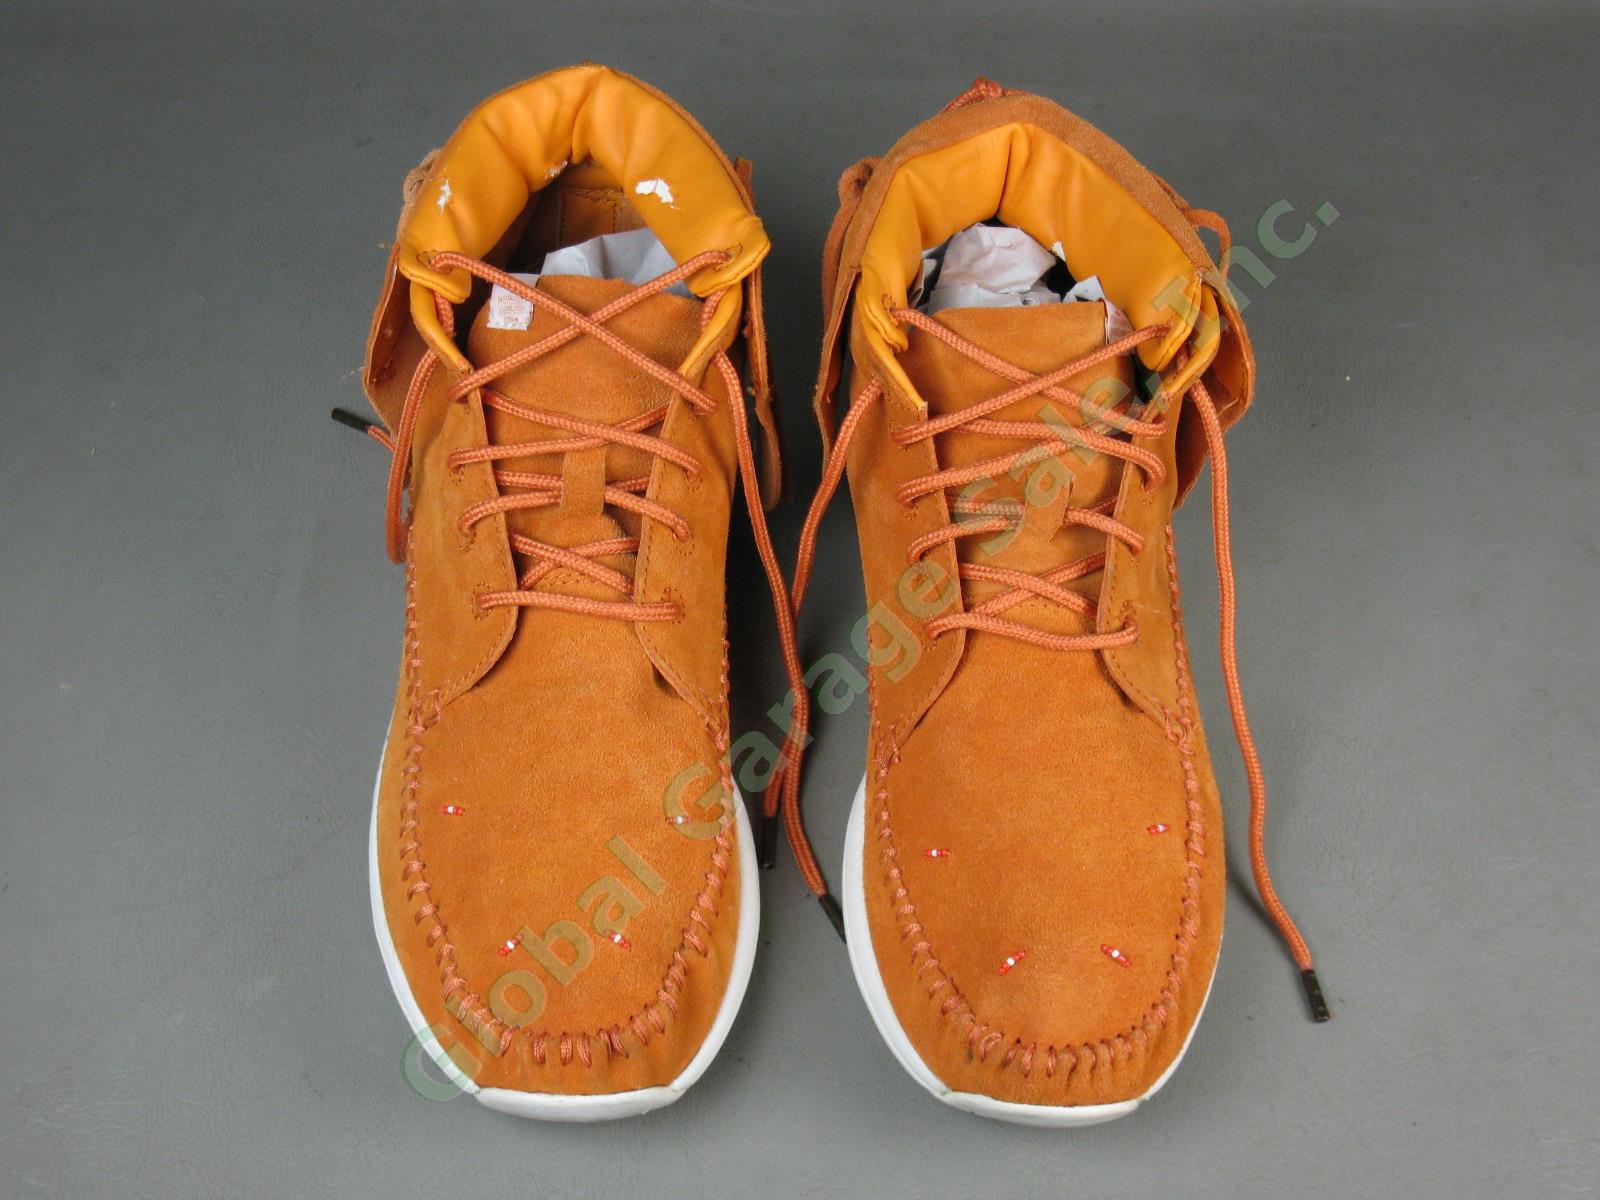 Visvim Lhamo Mens Brown Suede Leather Shoes Folk FBT Size Euro 45 US 11.5 5